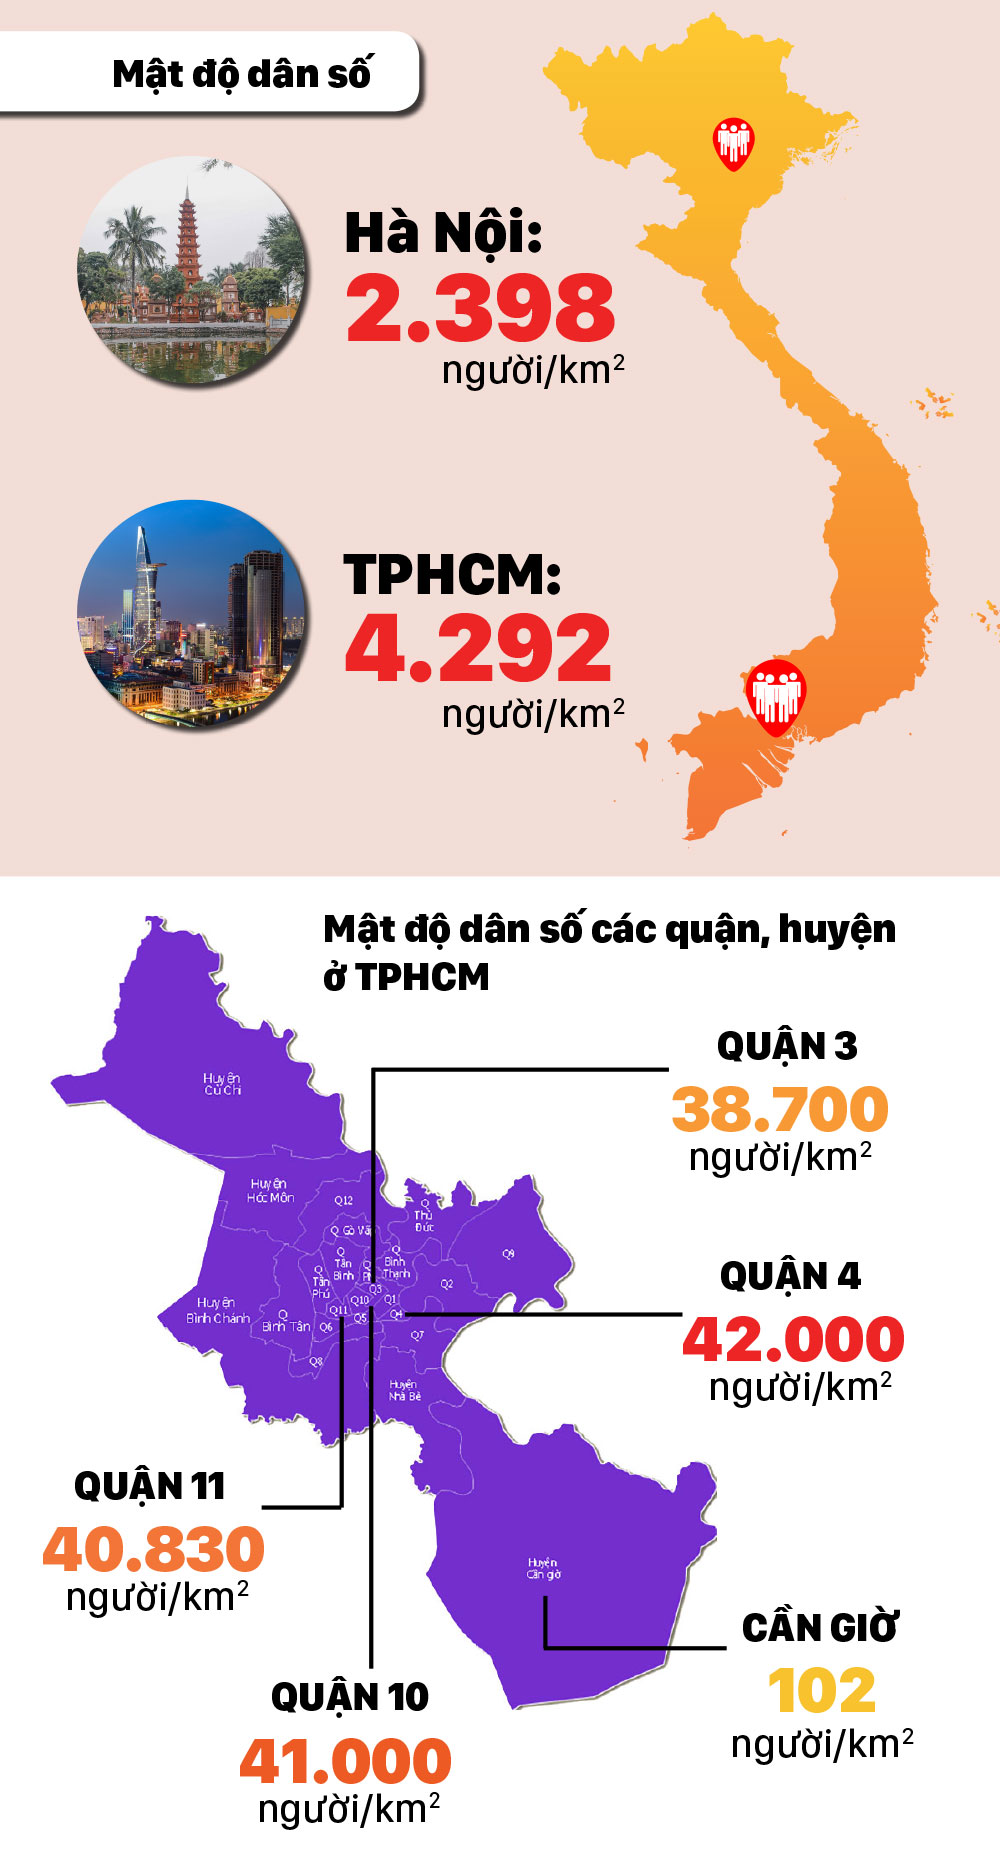 TPHCM đông dân nhất cả nước, gần 9 triệu người ảnh 3